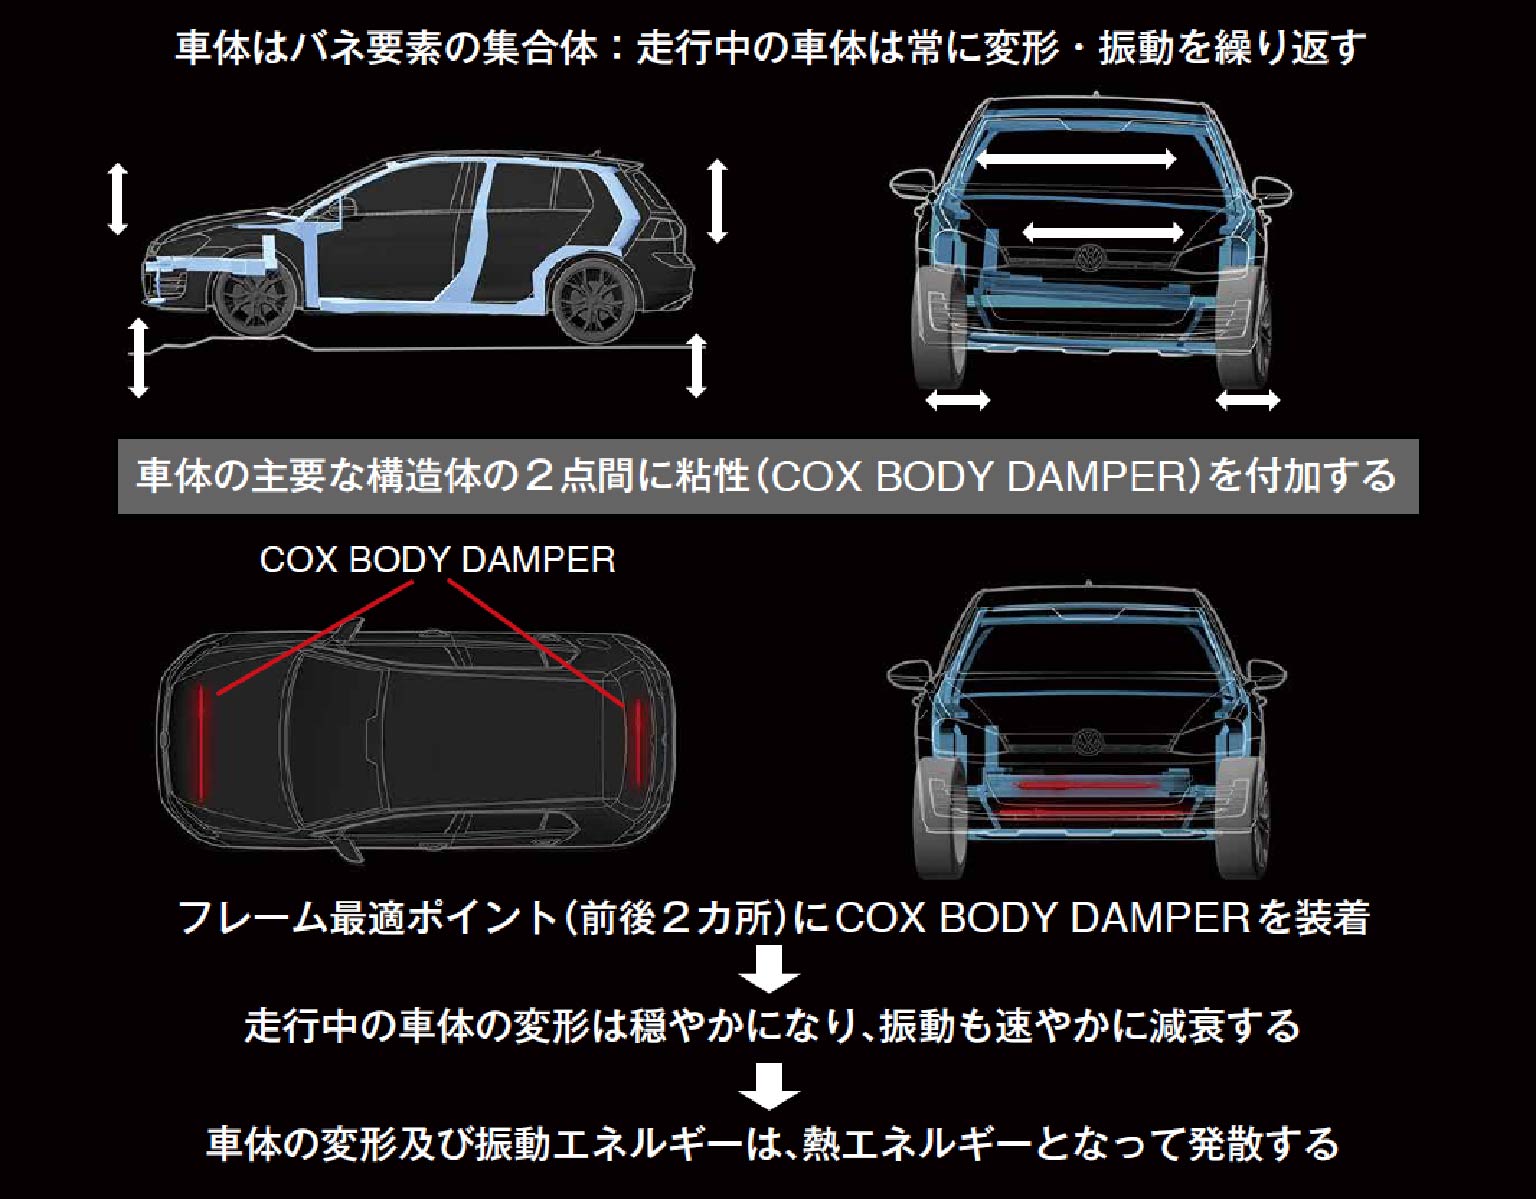 ボディーダンパー – コックス株式会社 / COX Incorporated